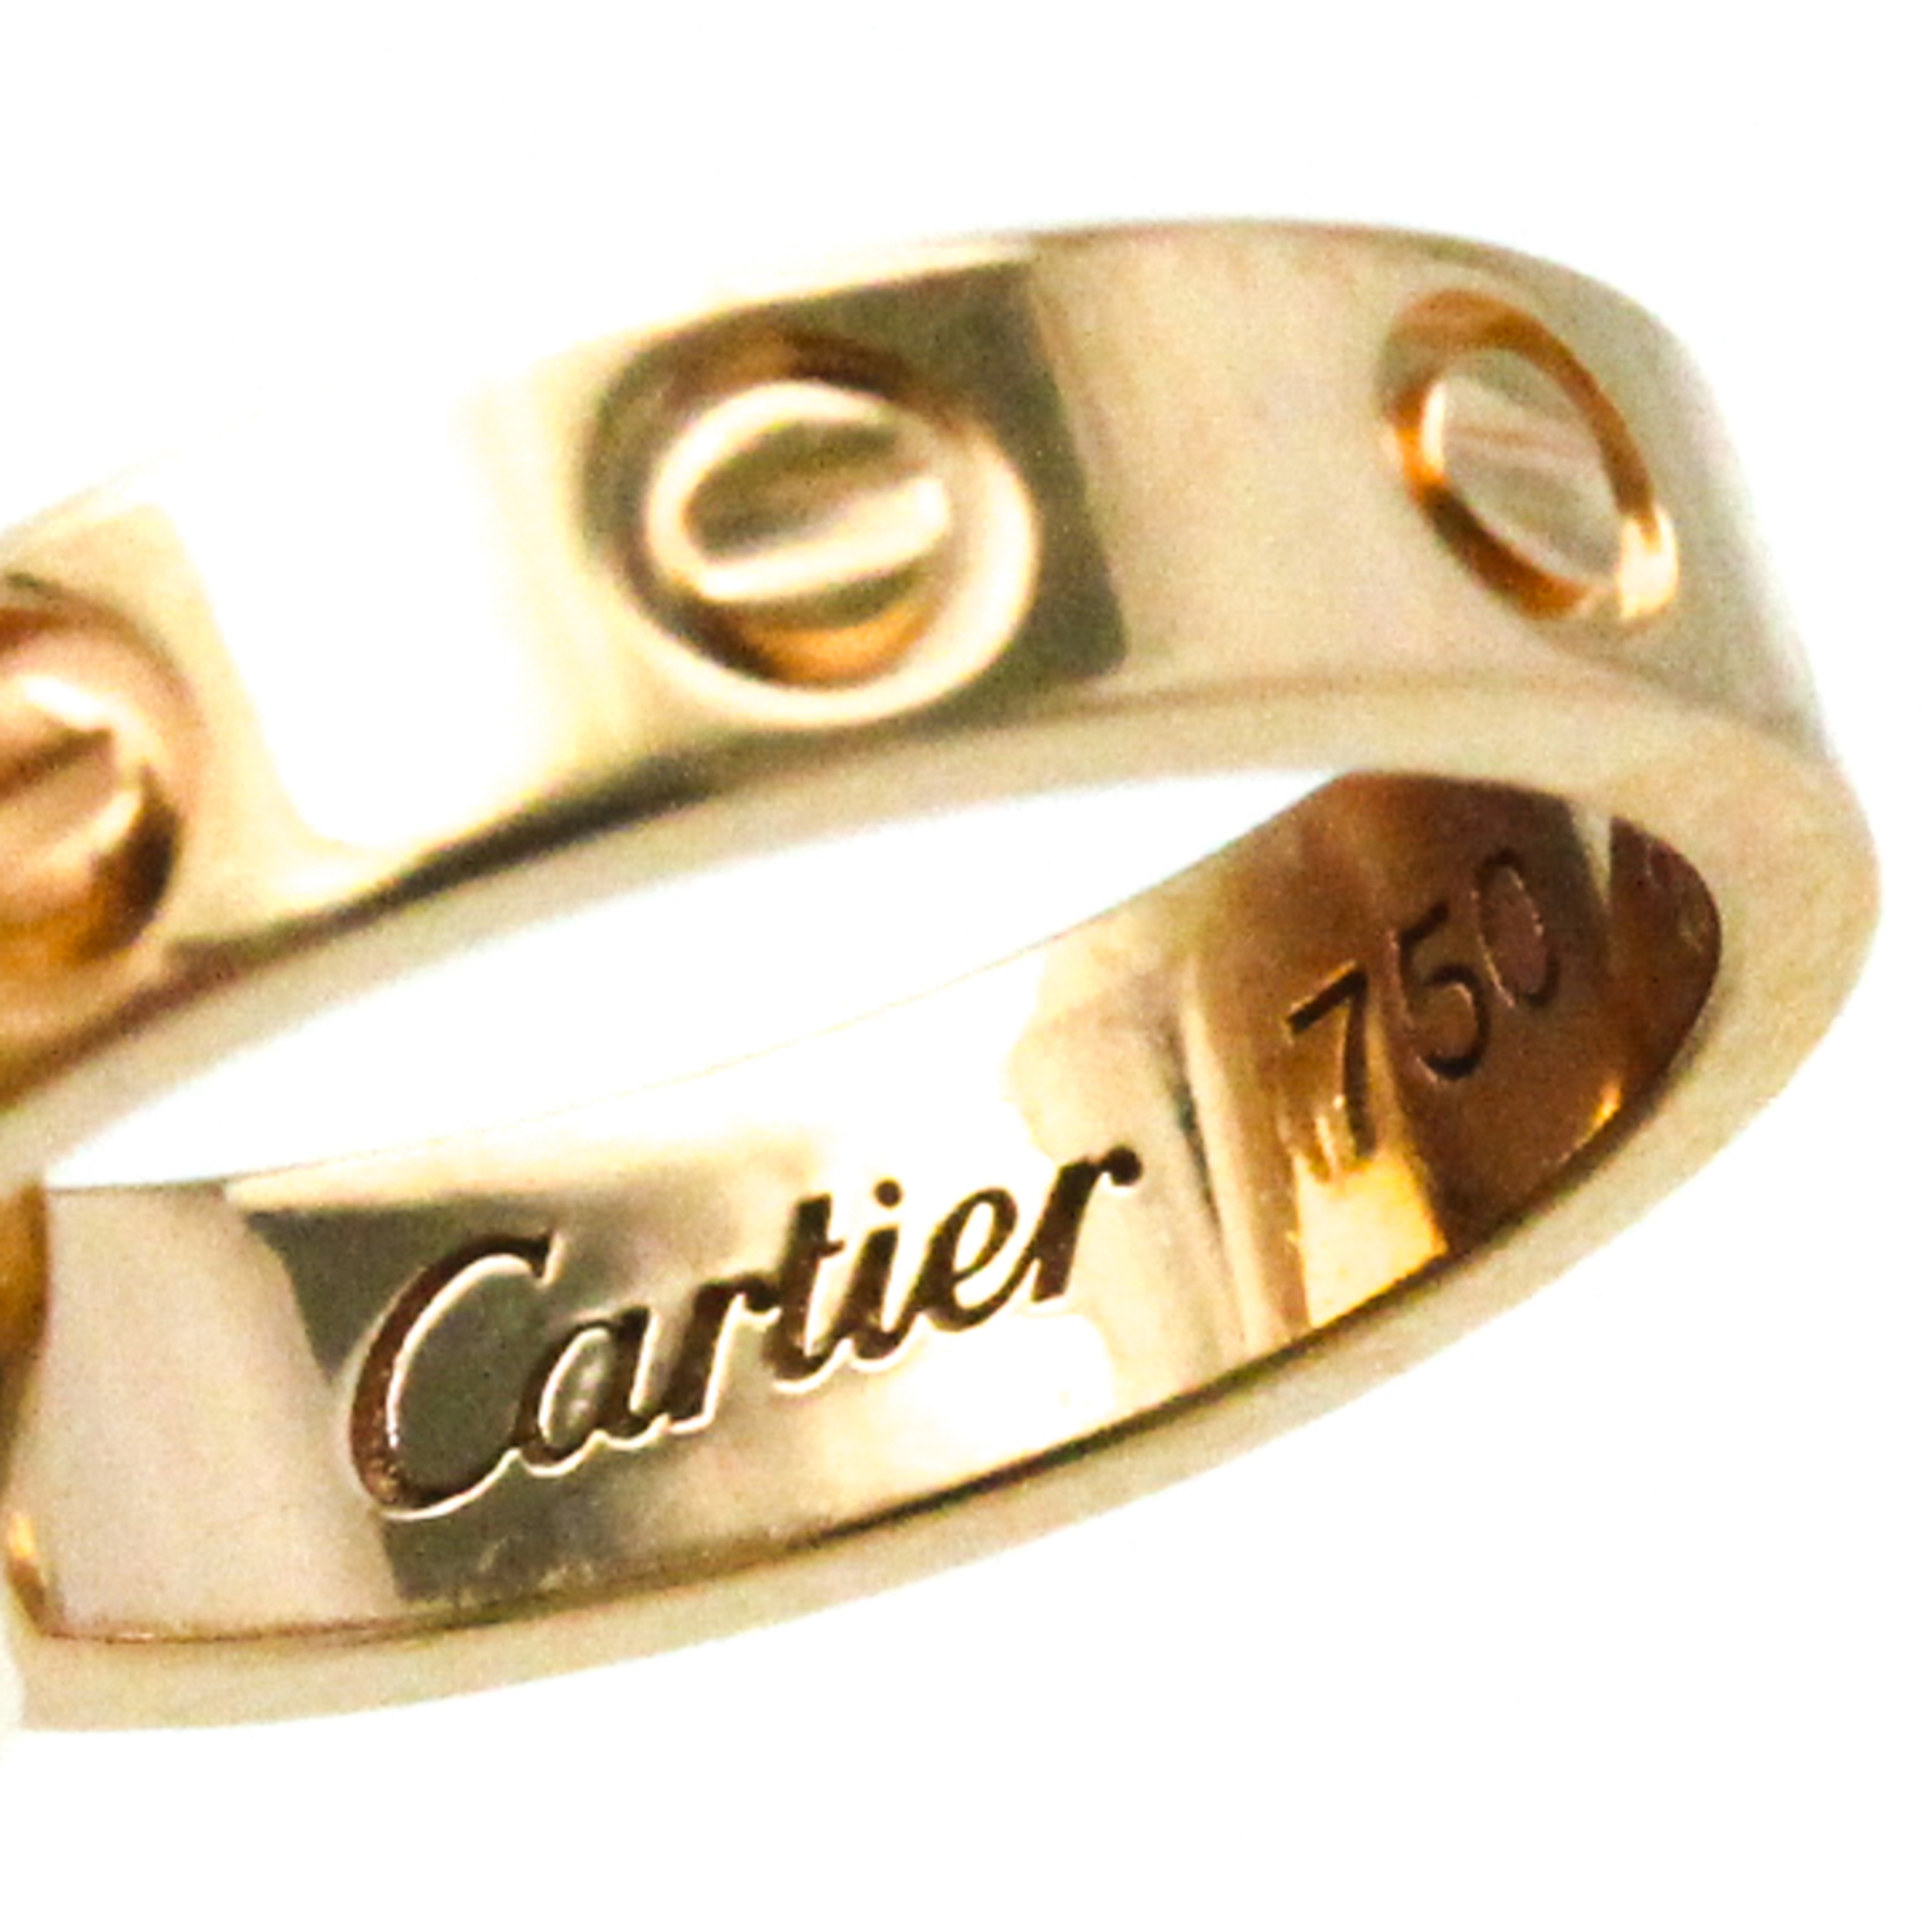 Cartier Love Bracelet Pink Gold (18K) No Stone Charm Bracelet Pink Gold